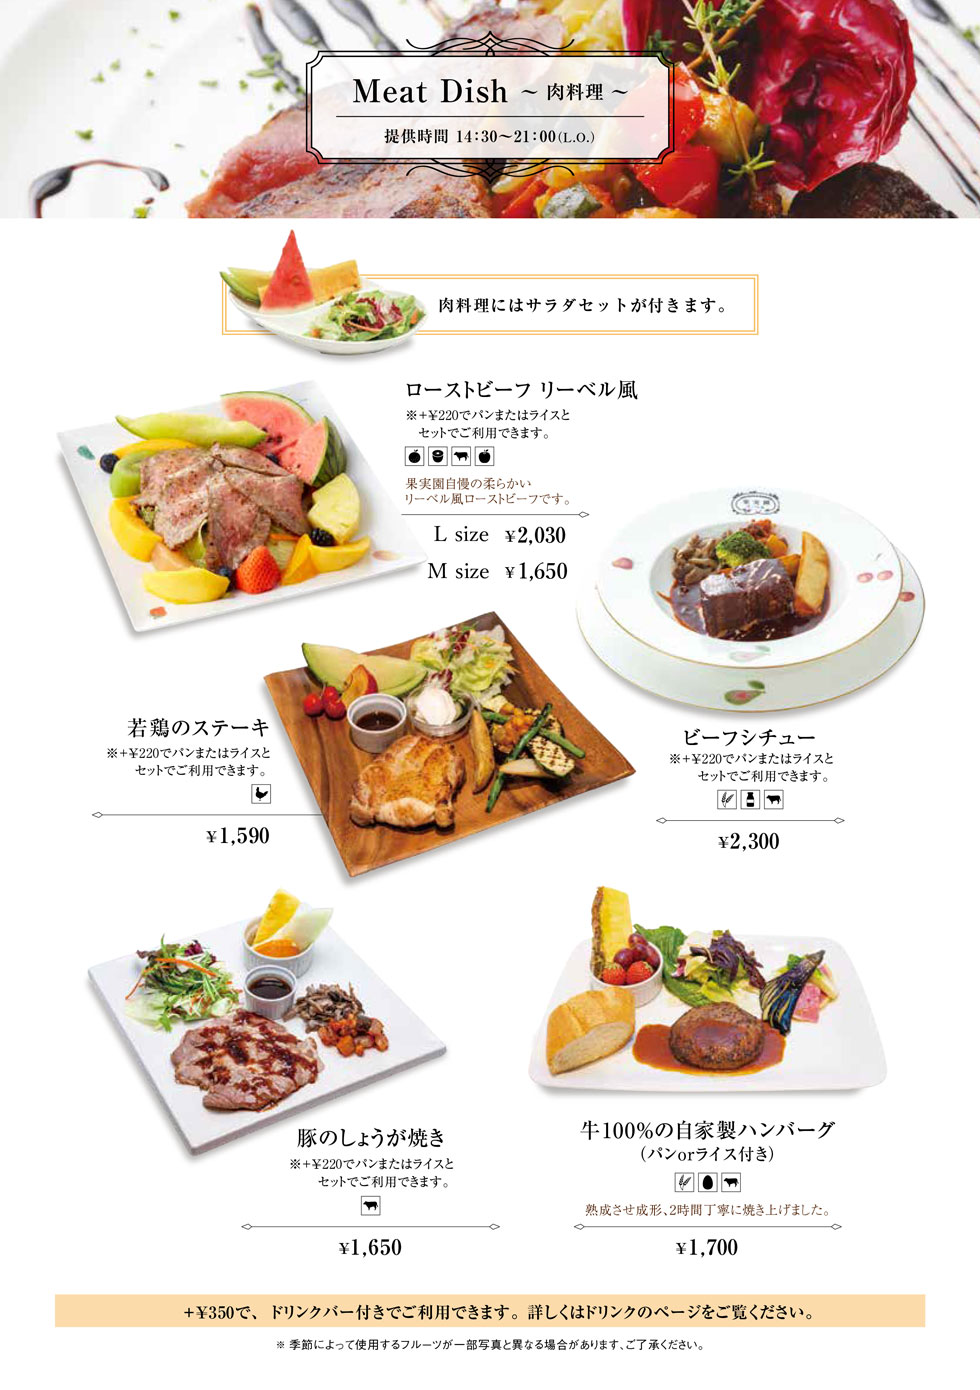 藤沢店の食事メニュー定番肉料理